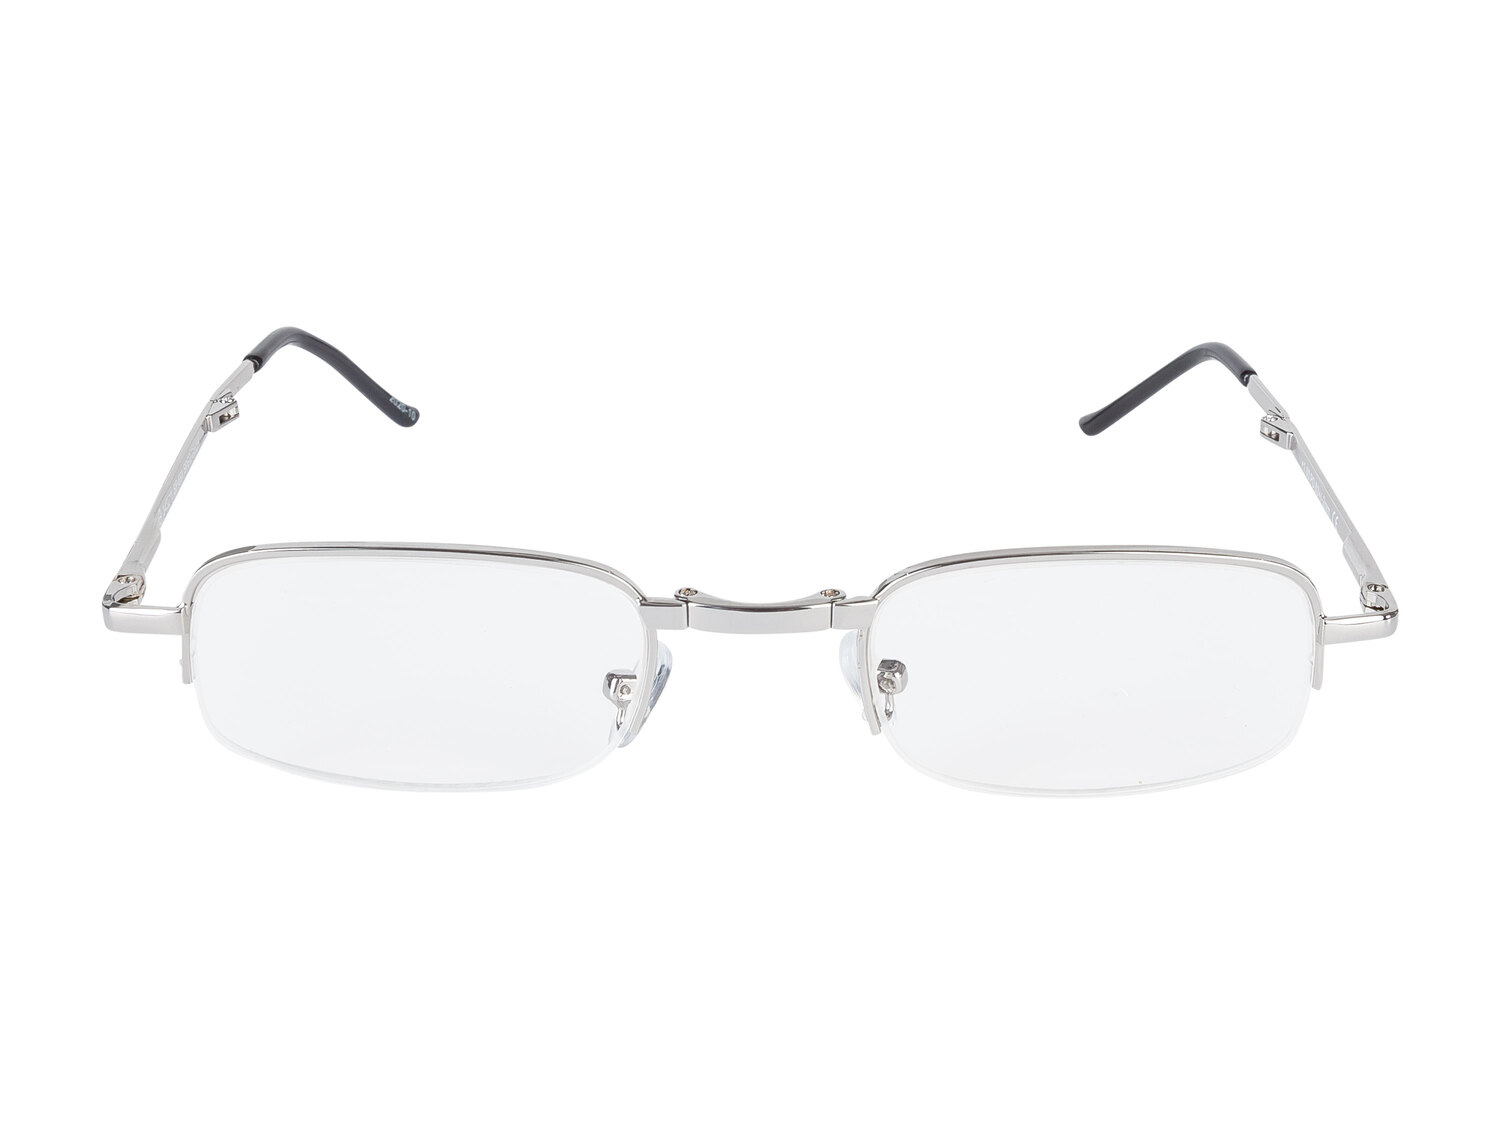 Składane okulary do czytania w etui , cena 12,99 PLN 
4 zestawy do wyboru 
- ...